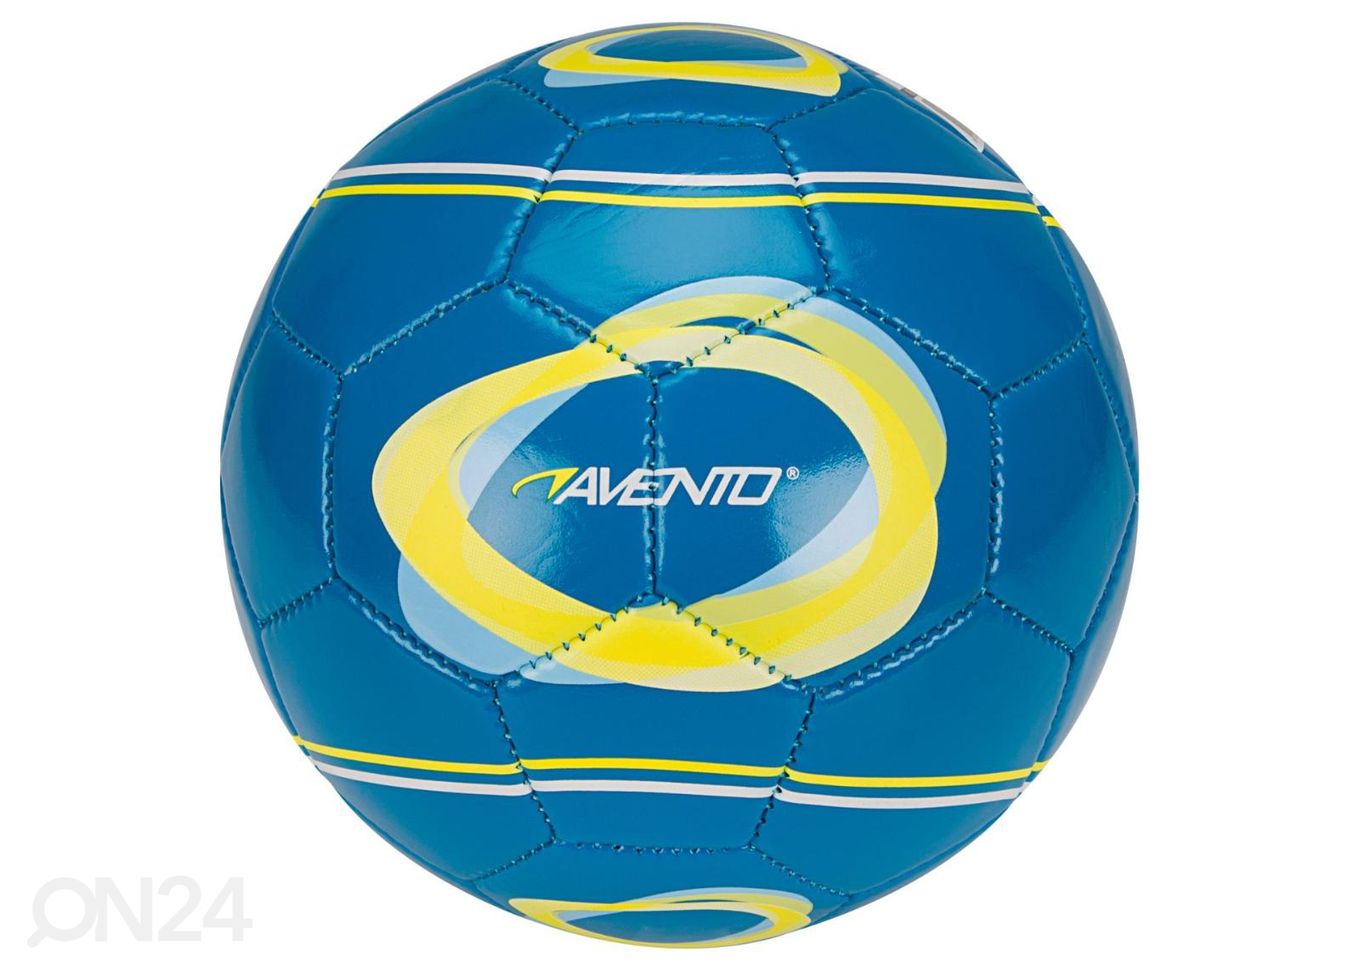 Jalgpall mini Elipse-2 Avento suurendatud